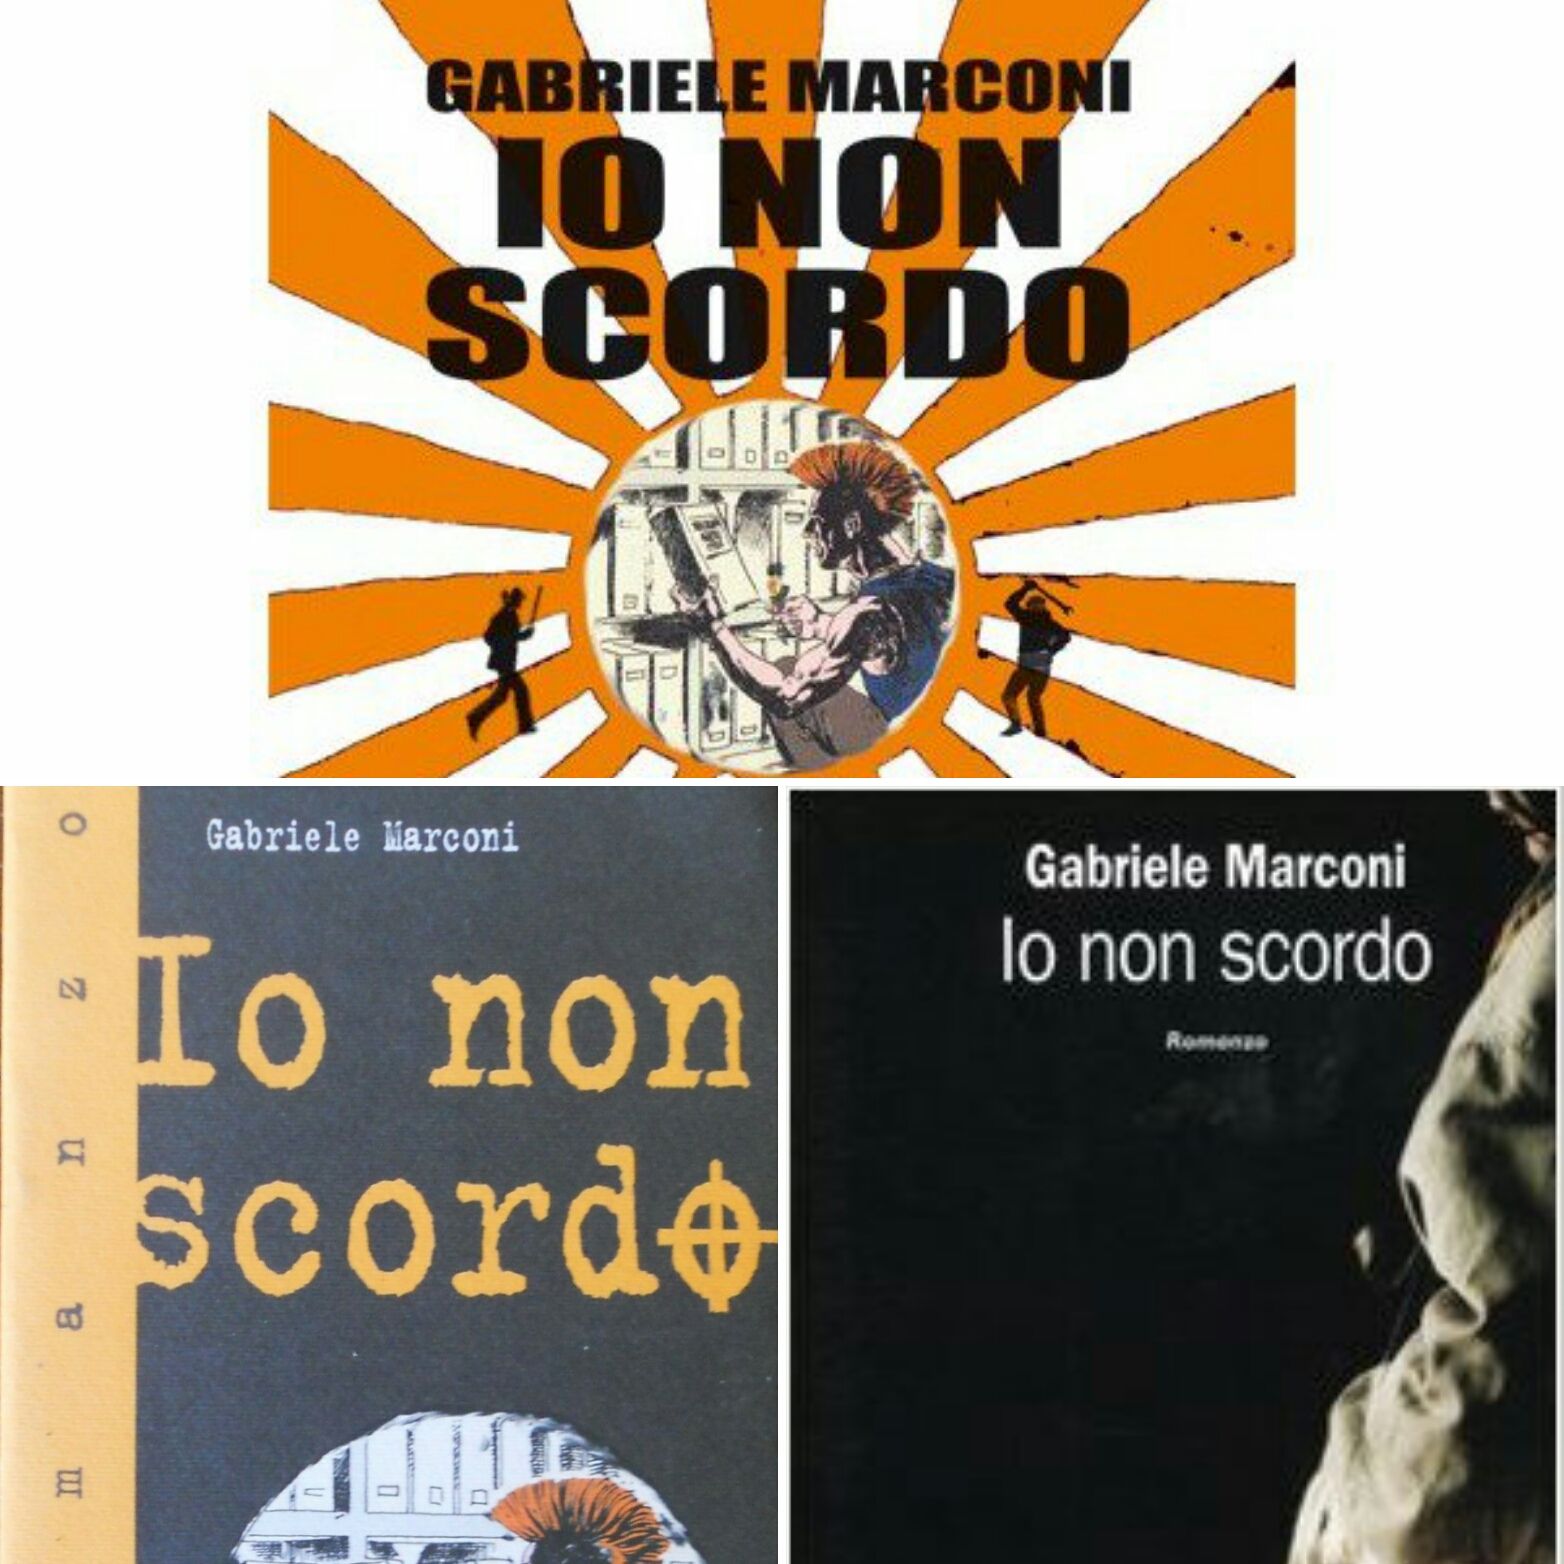 “Io non scordo” di Gabriele Marconi, e voi non vi scordate di prenderlo (prima che sparisca!)